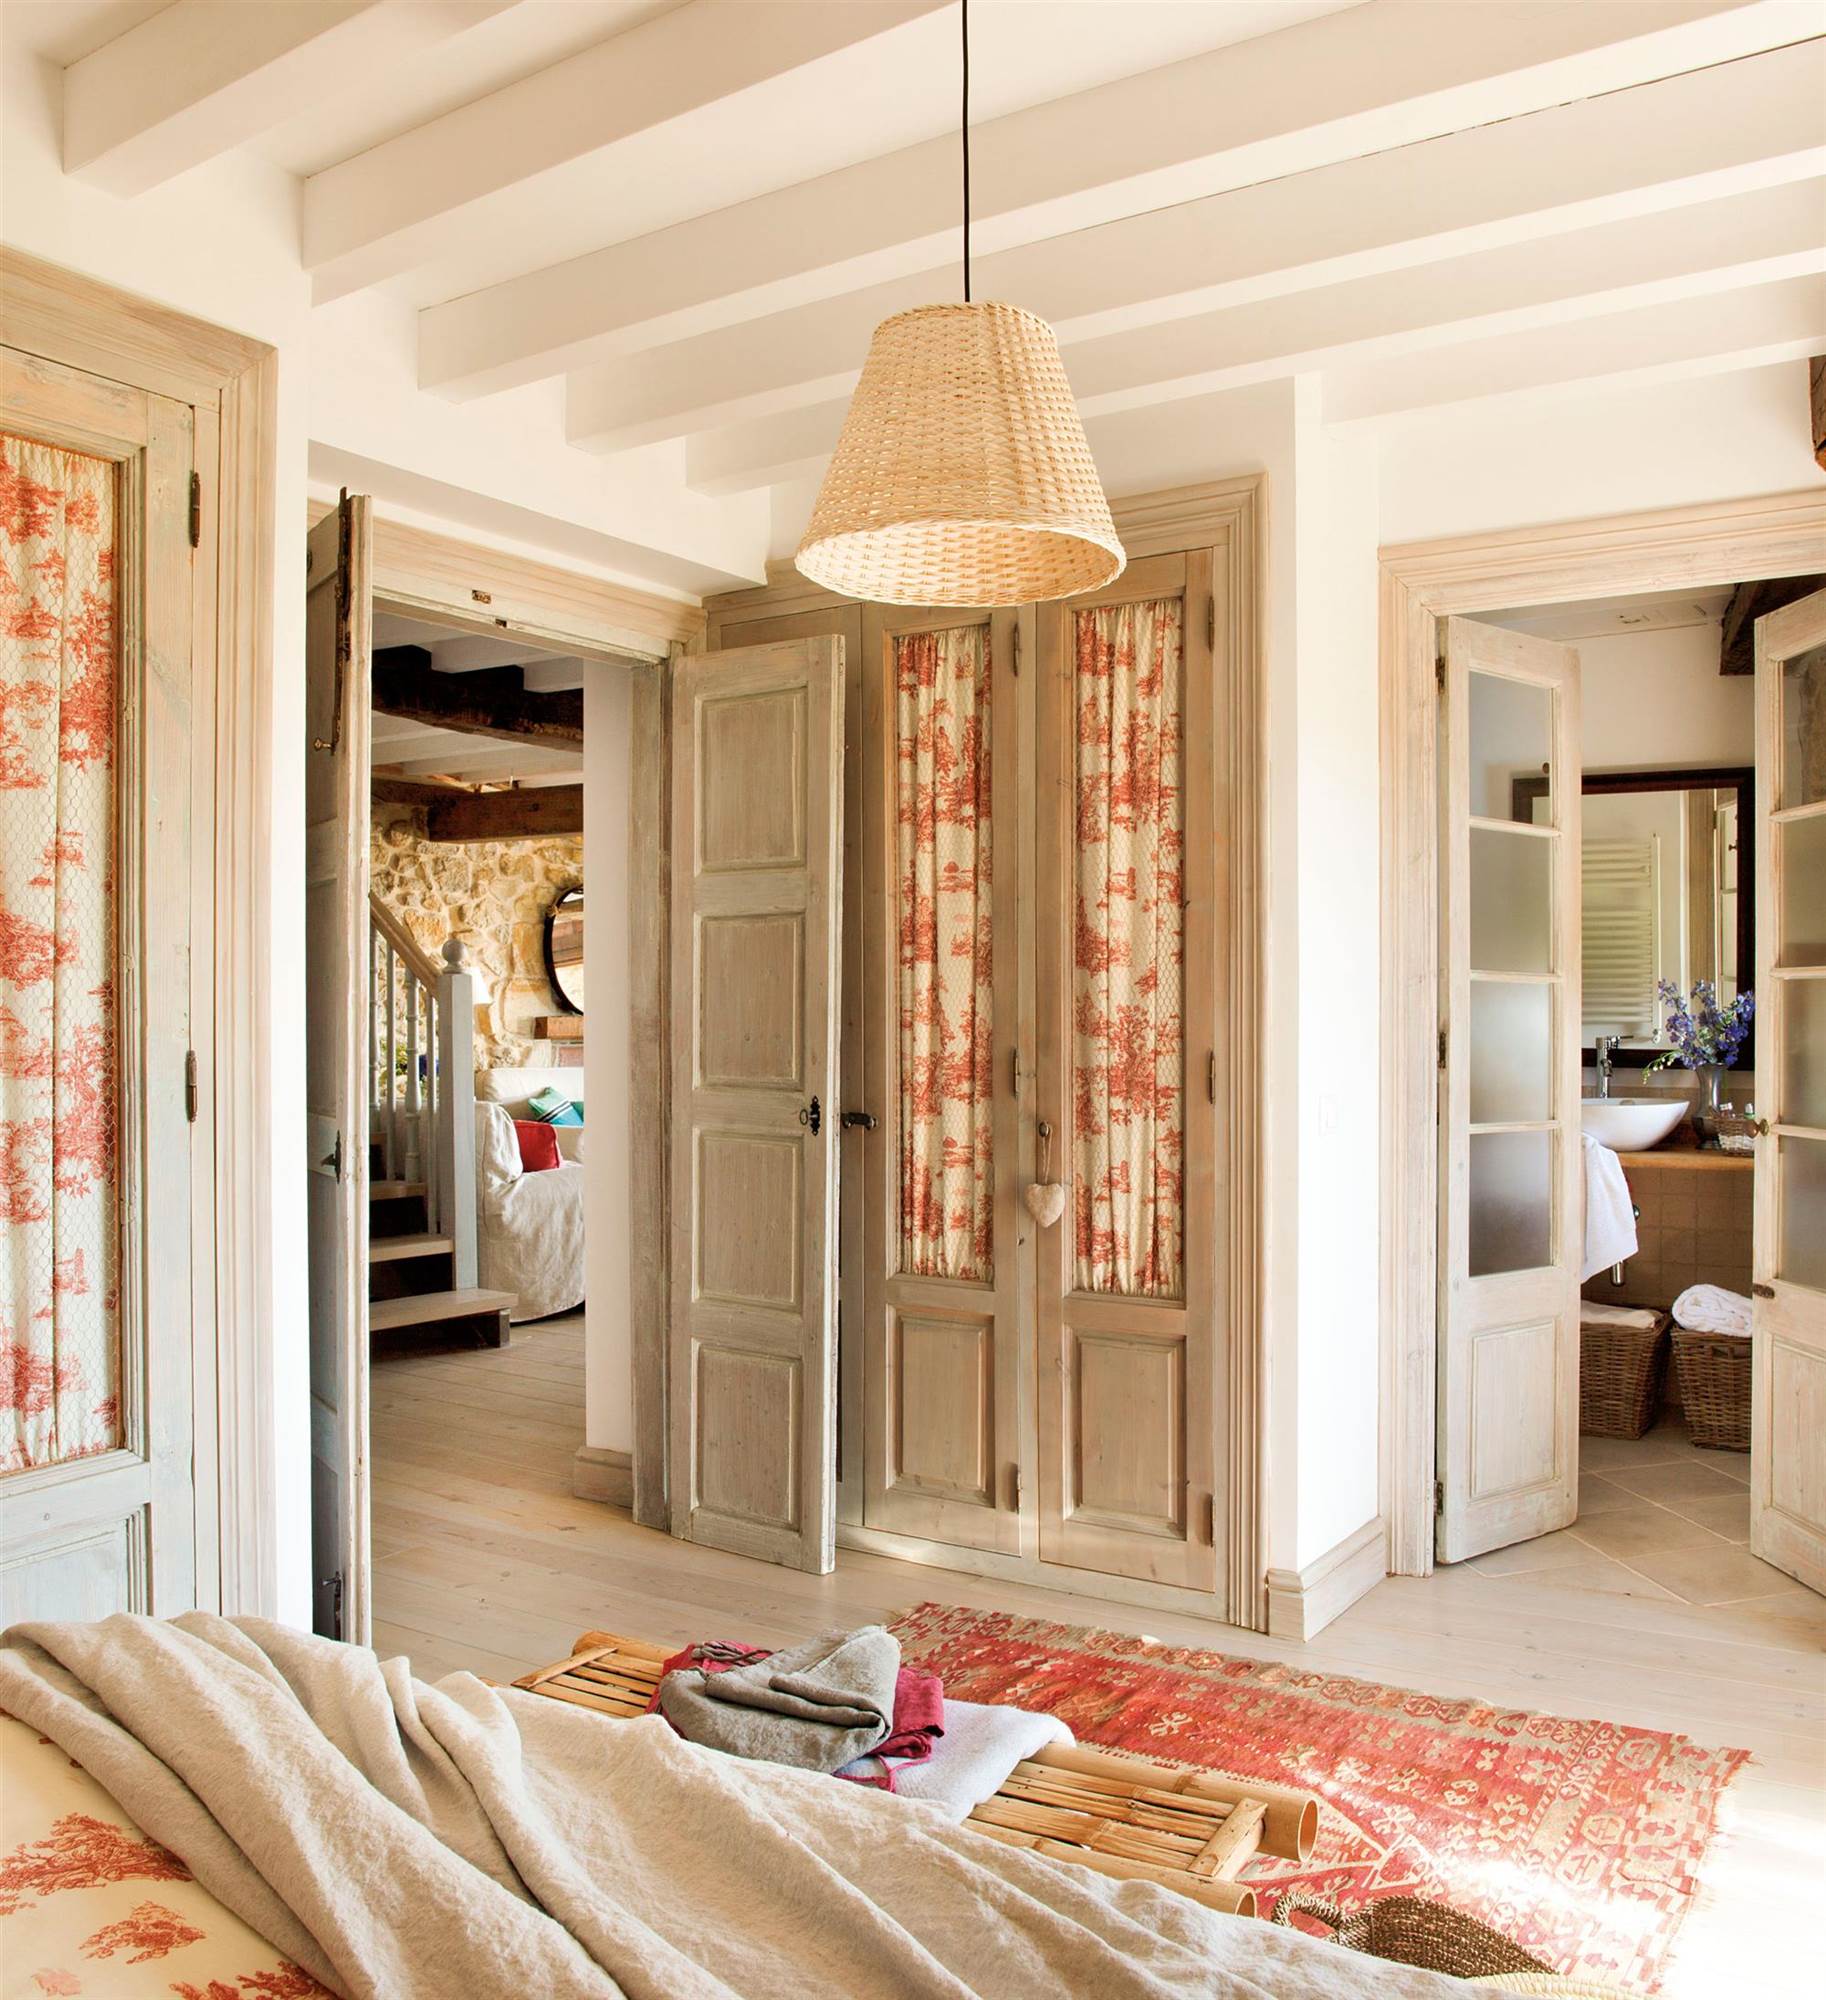 Dormitorio rústico con armarios con frentes acristalados y con cortinillas de toile de Jouy